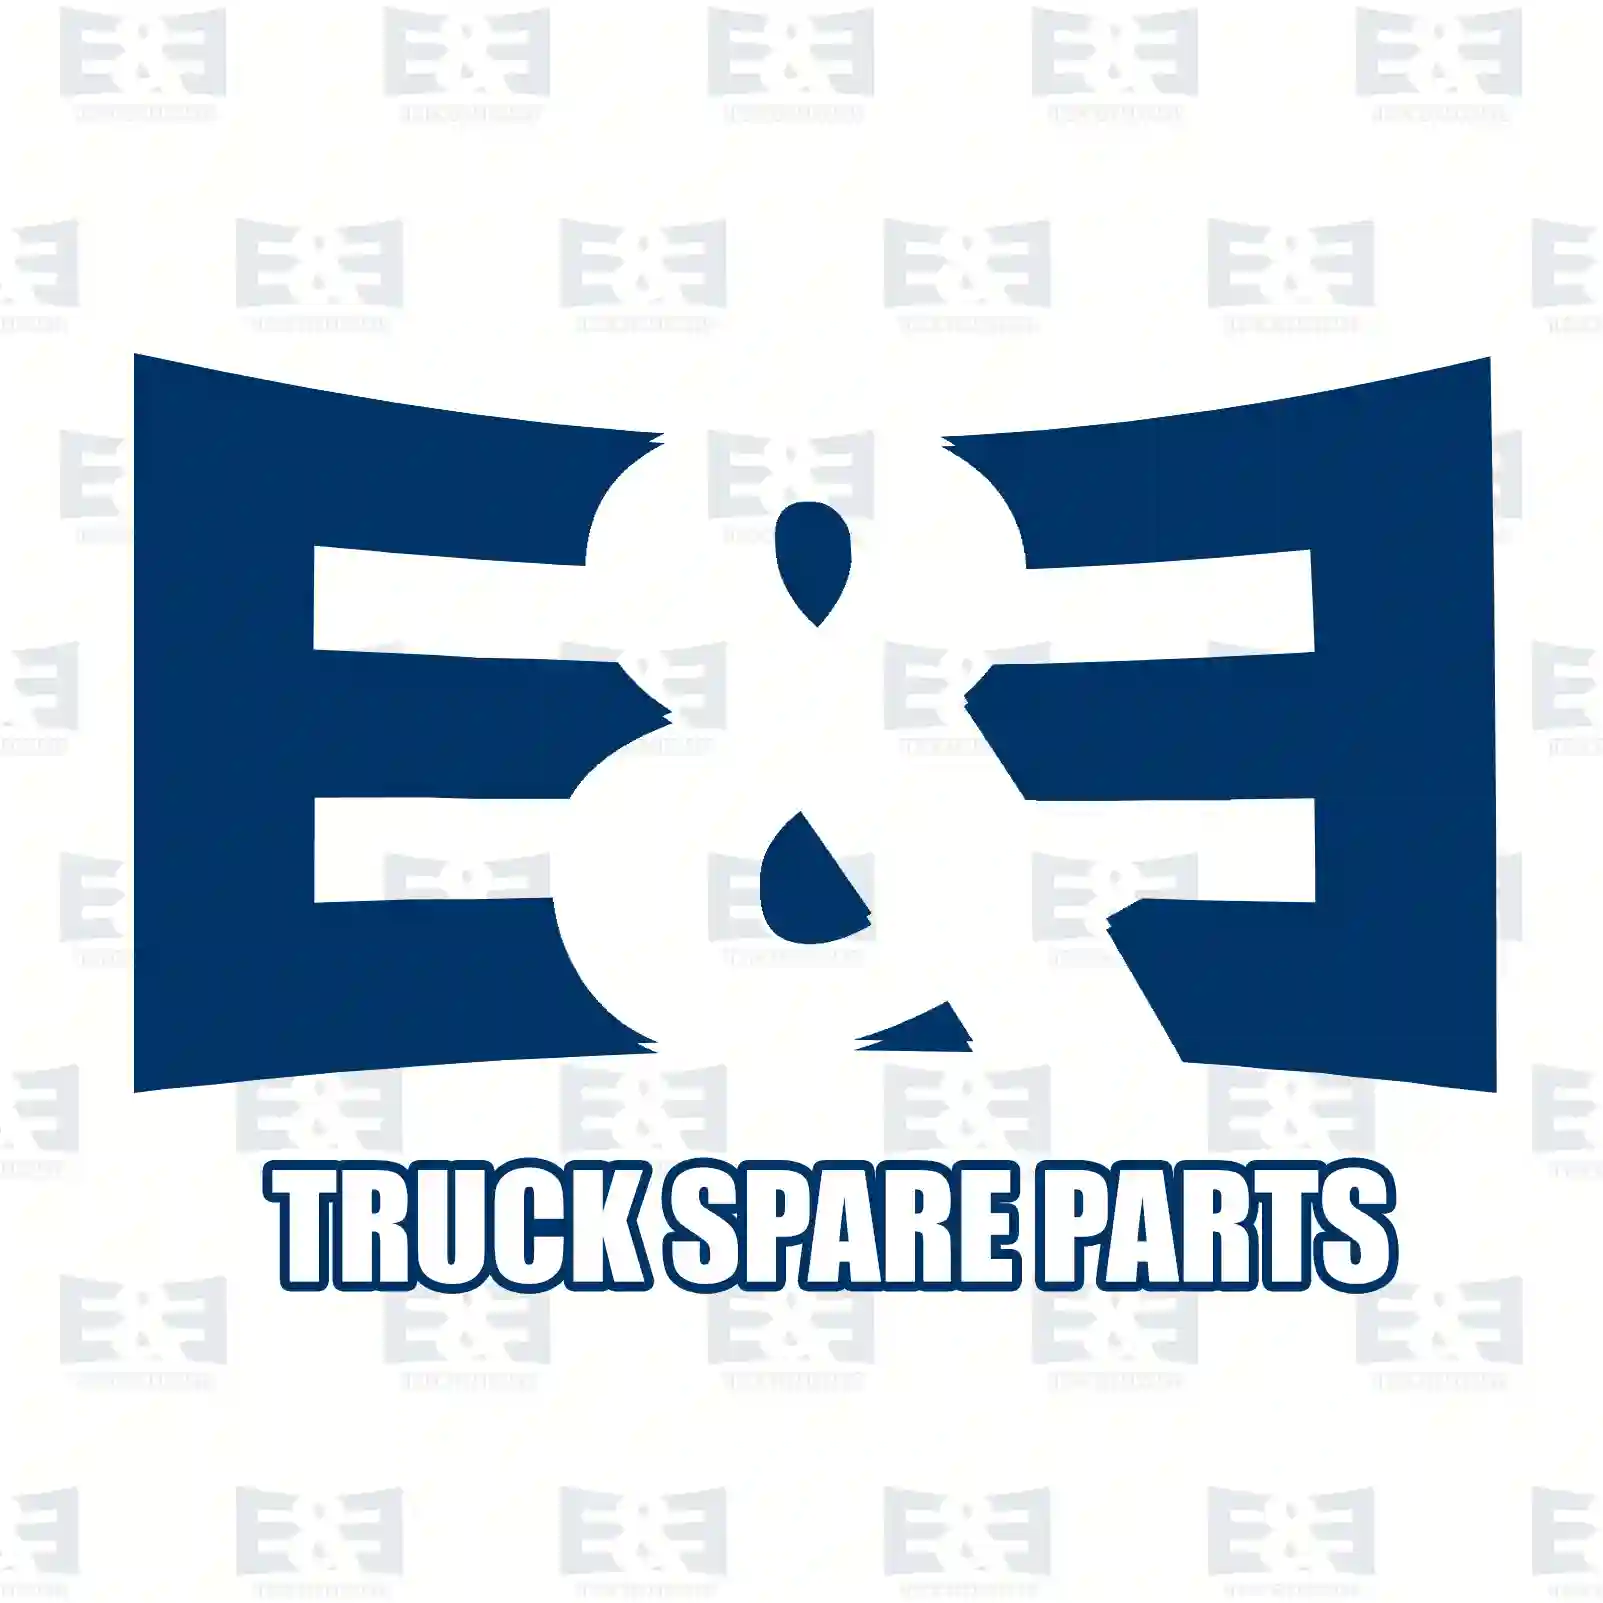 Lock nut, 2E2275322, 81906850386, 7400981586, 981586, ||  2E2275322 E&E Truck Spare Parts | Truck Spare Parts, Auotomotive Spare Parts Lock nut, 2E2275322, 81906850386, 7400981586, 981586, ||  2E2275322 E&E Truck Spare Parts | Truck Spare Parts, Auotomotive Spare Parts